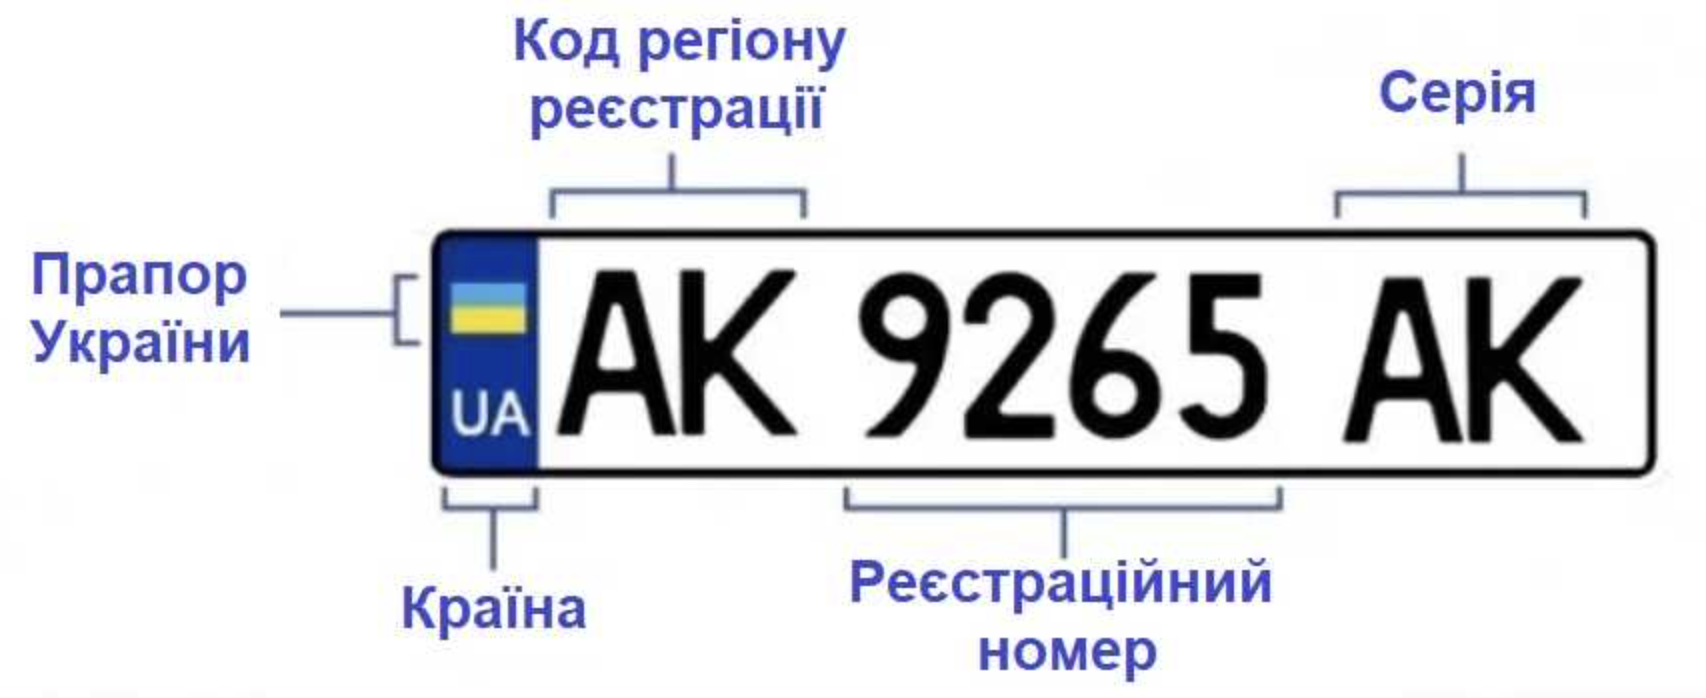 С каких цифр начинается украинский номер. Обозначение автомобильных номеров Украины. Номерные знаки регионов Украины. Автомобильные номера Украины по регионам расшифровка. Номера Украины автомобильные.